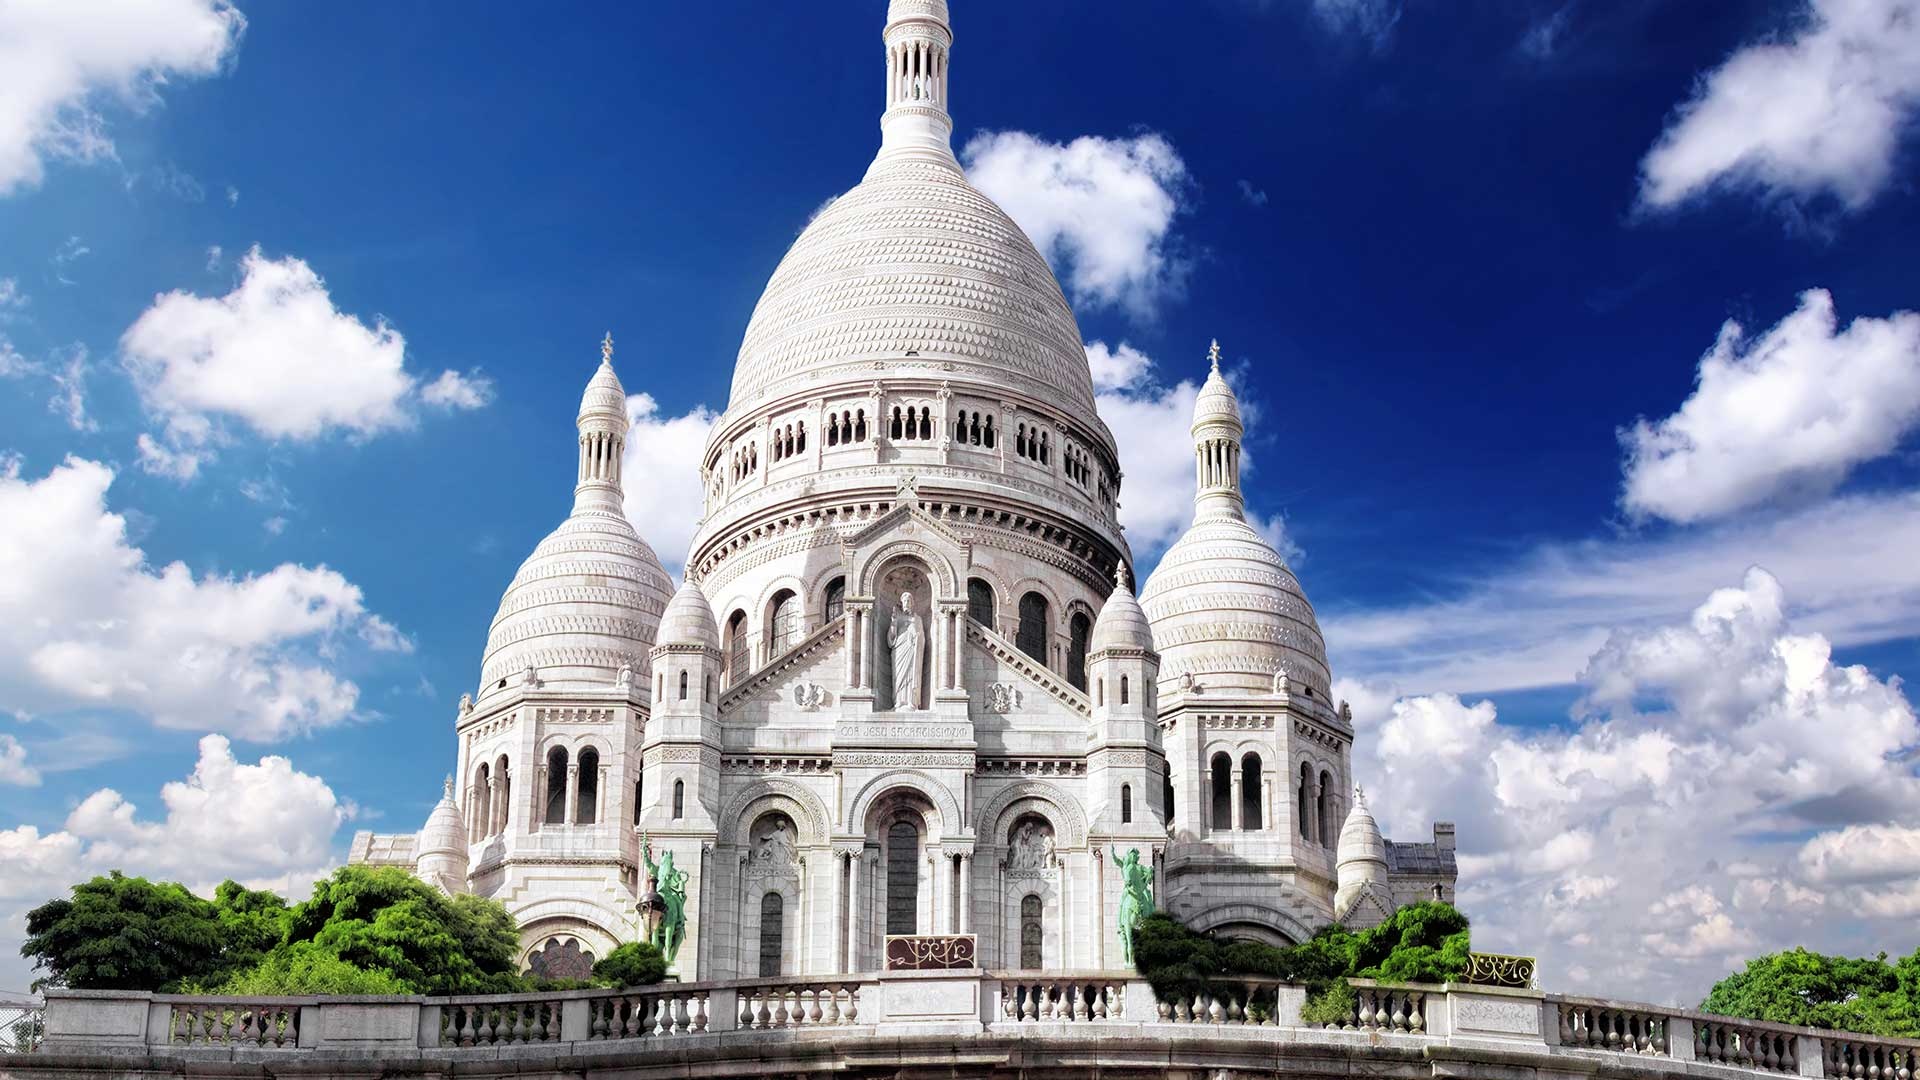 Sacre Coeur, Basilica of the Sacred Heart, Montmartre, Paris landmark, 1920x1080 Full HD Desktop